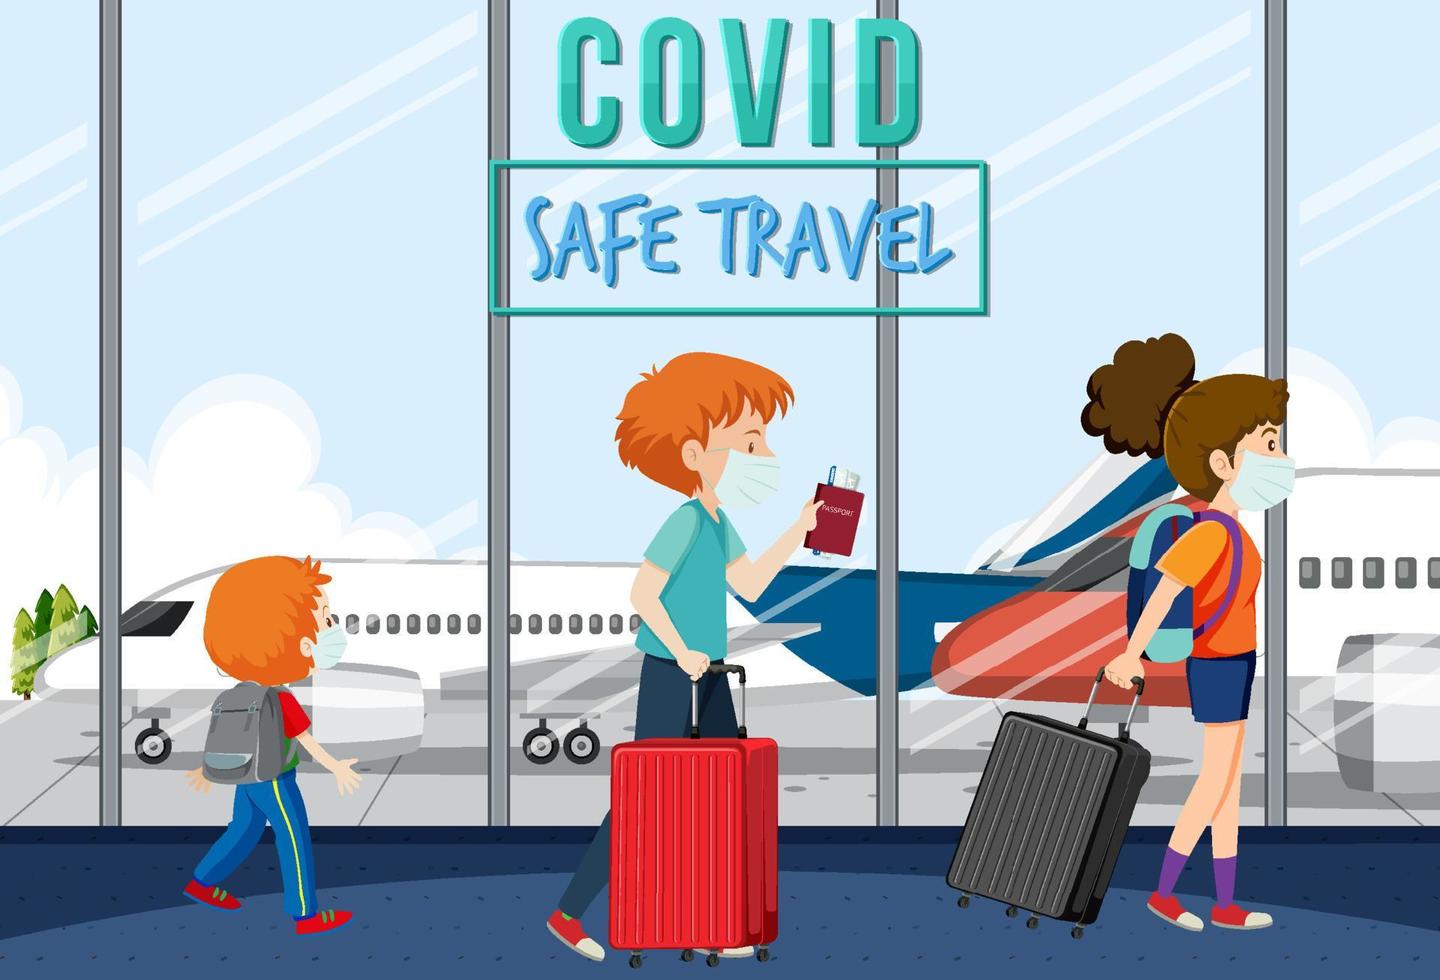 passagiers die op de luchthaven lopen met covid veilig reisbannerontwerp vector